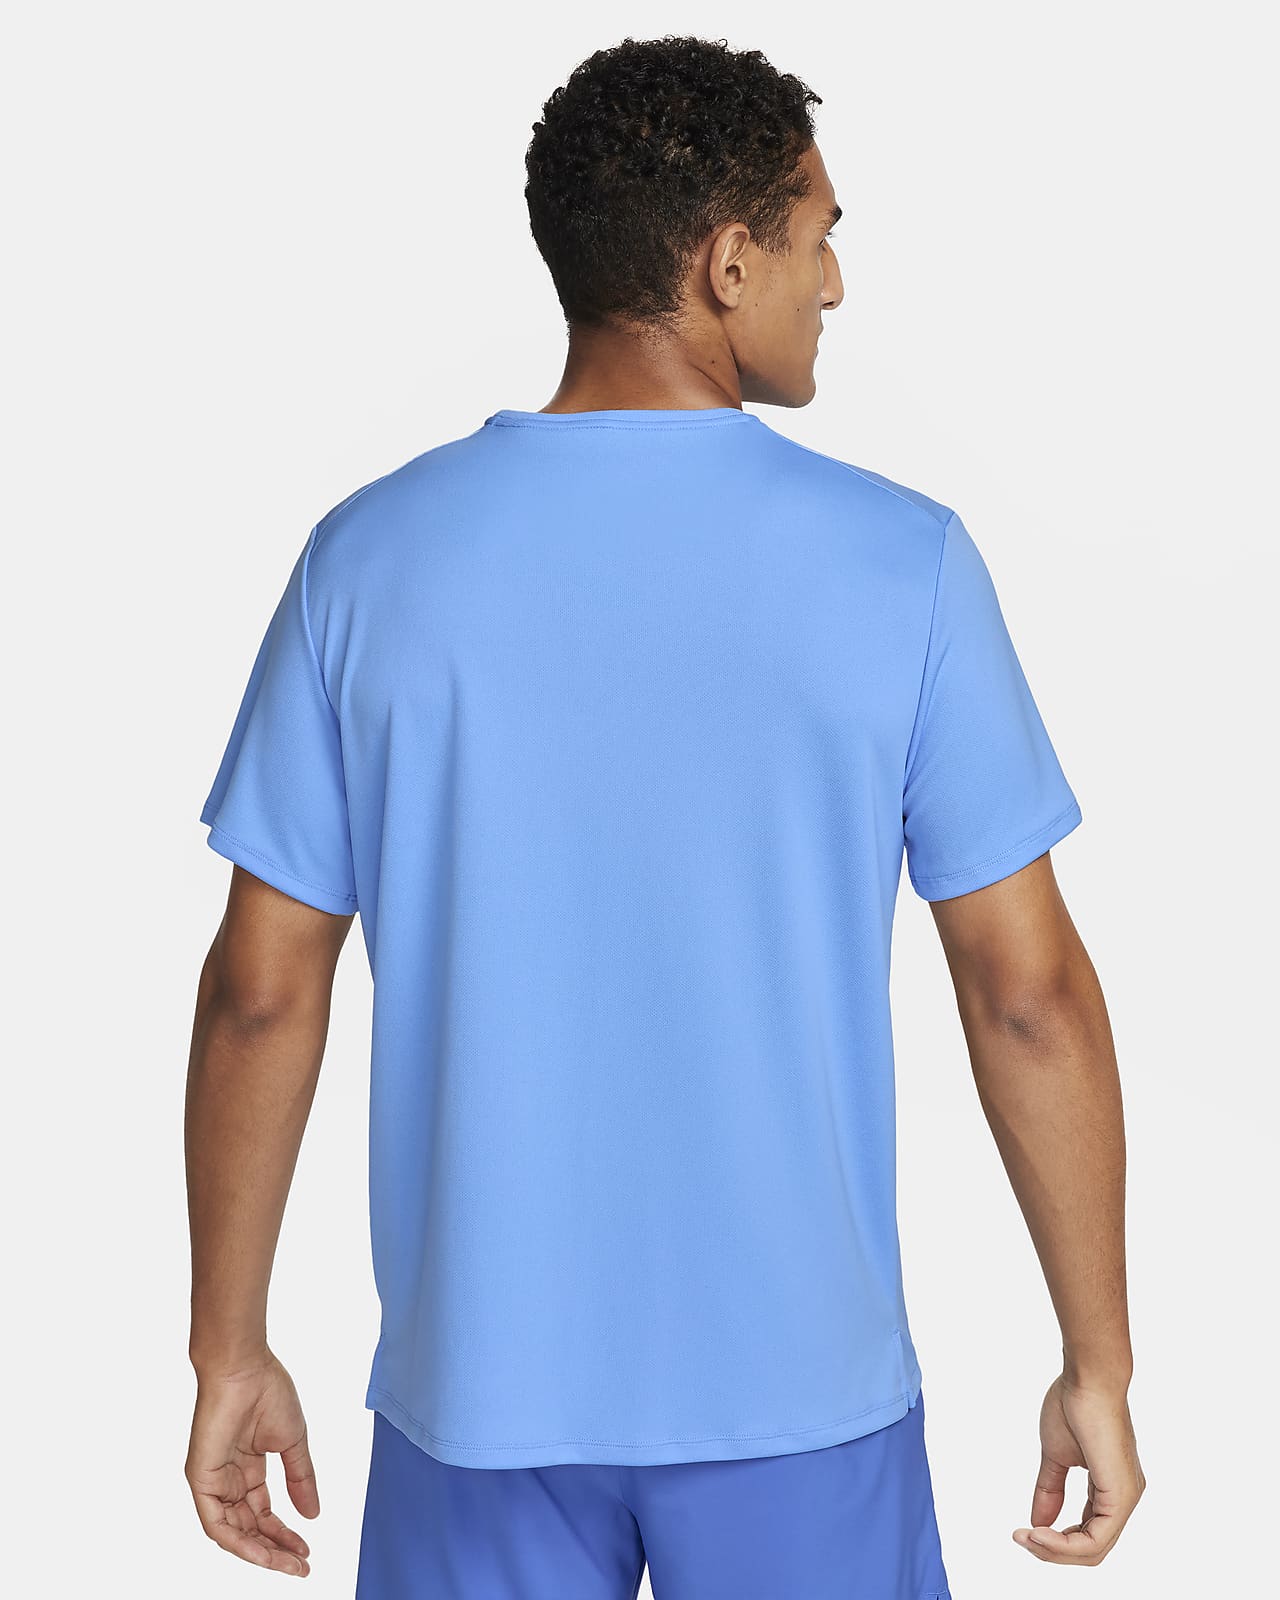 Camiseta Nike Dri-FIT UV Miler Run Division Masculina - Sportlins -  Calçados e Esportes